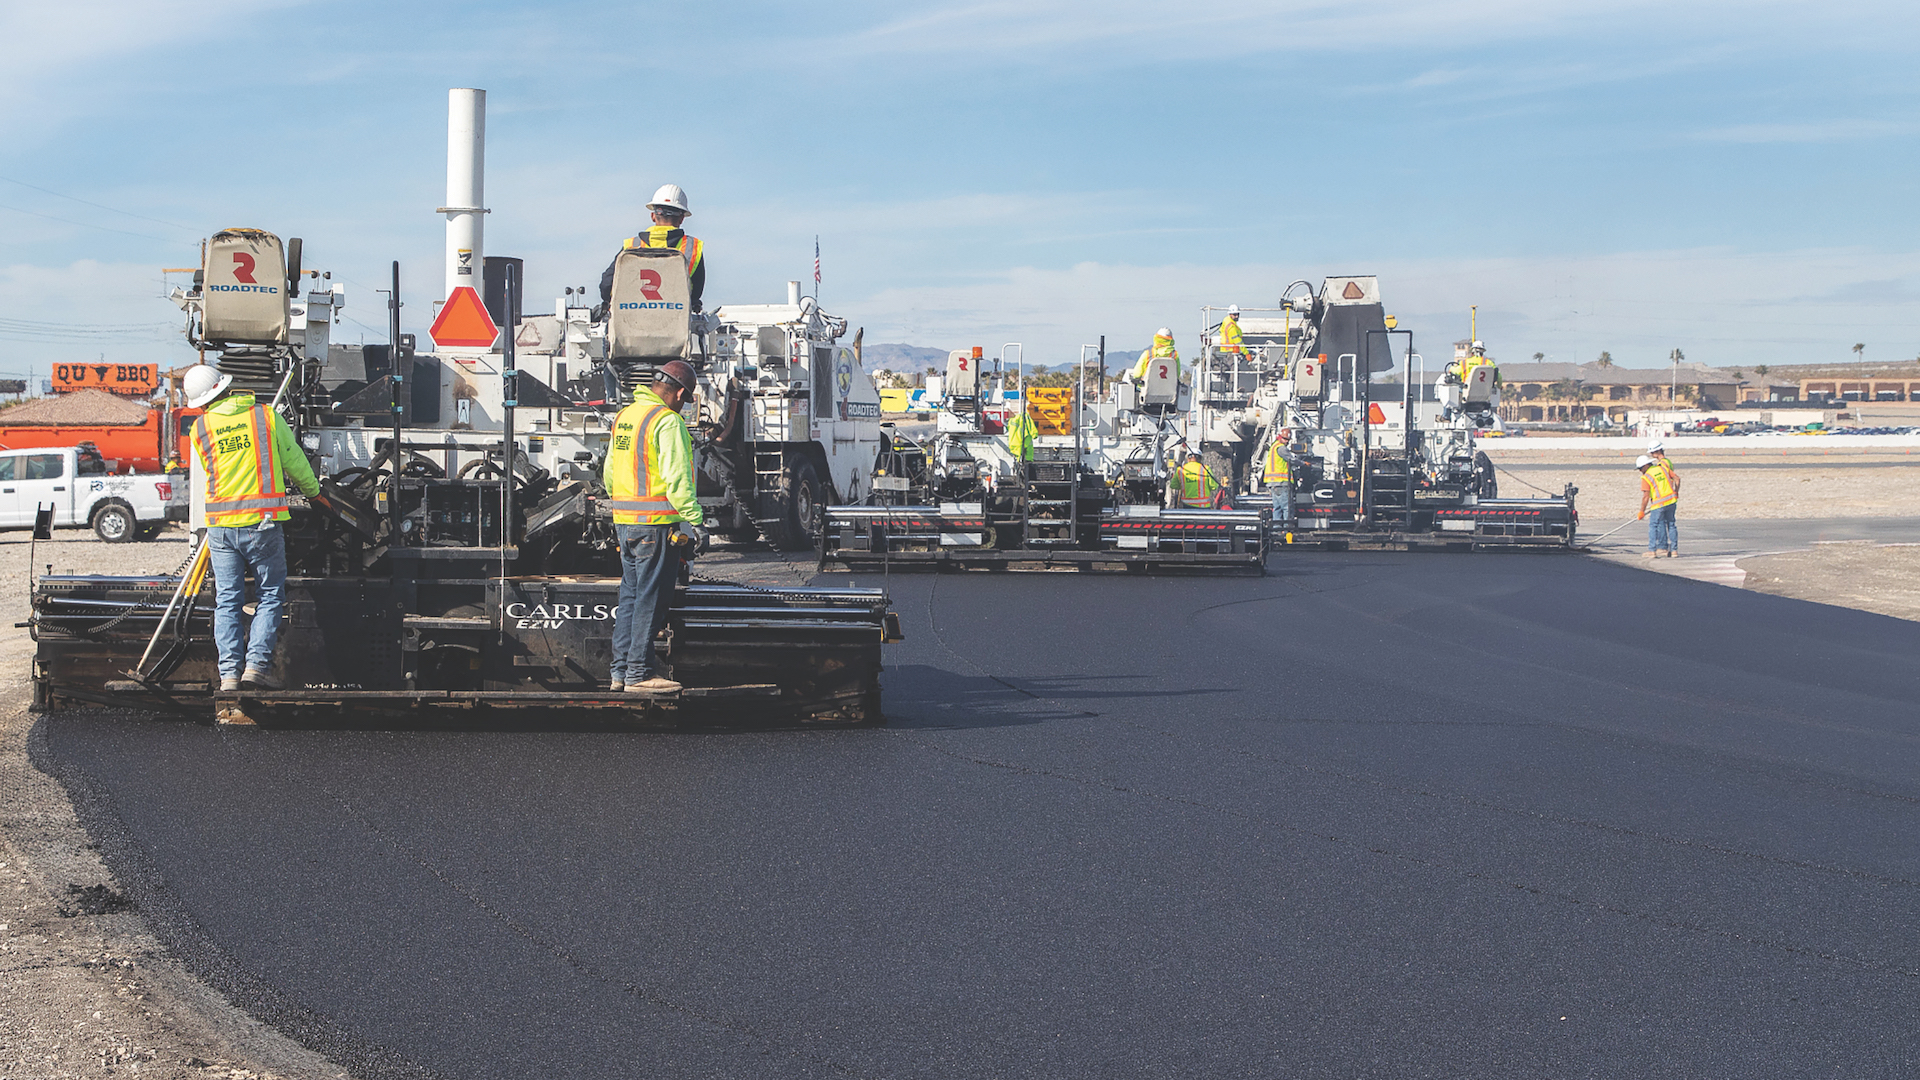 asphalt paving contractors